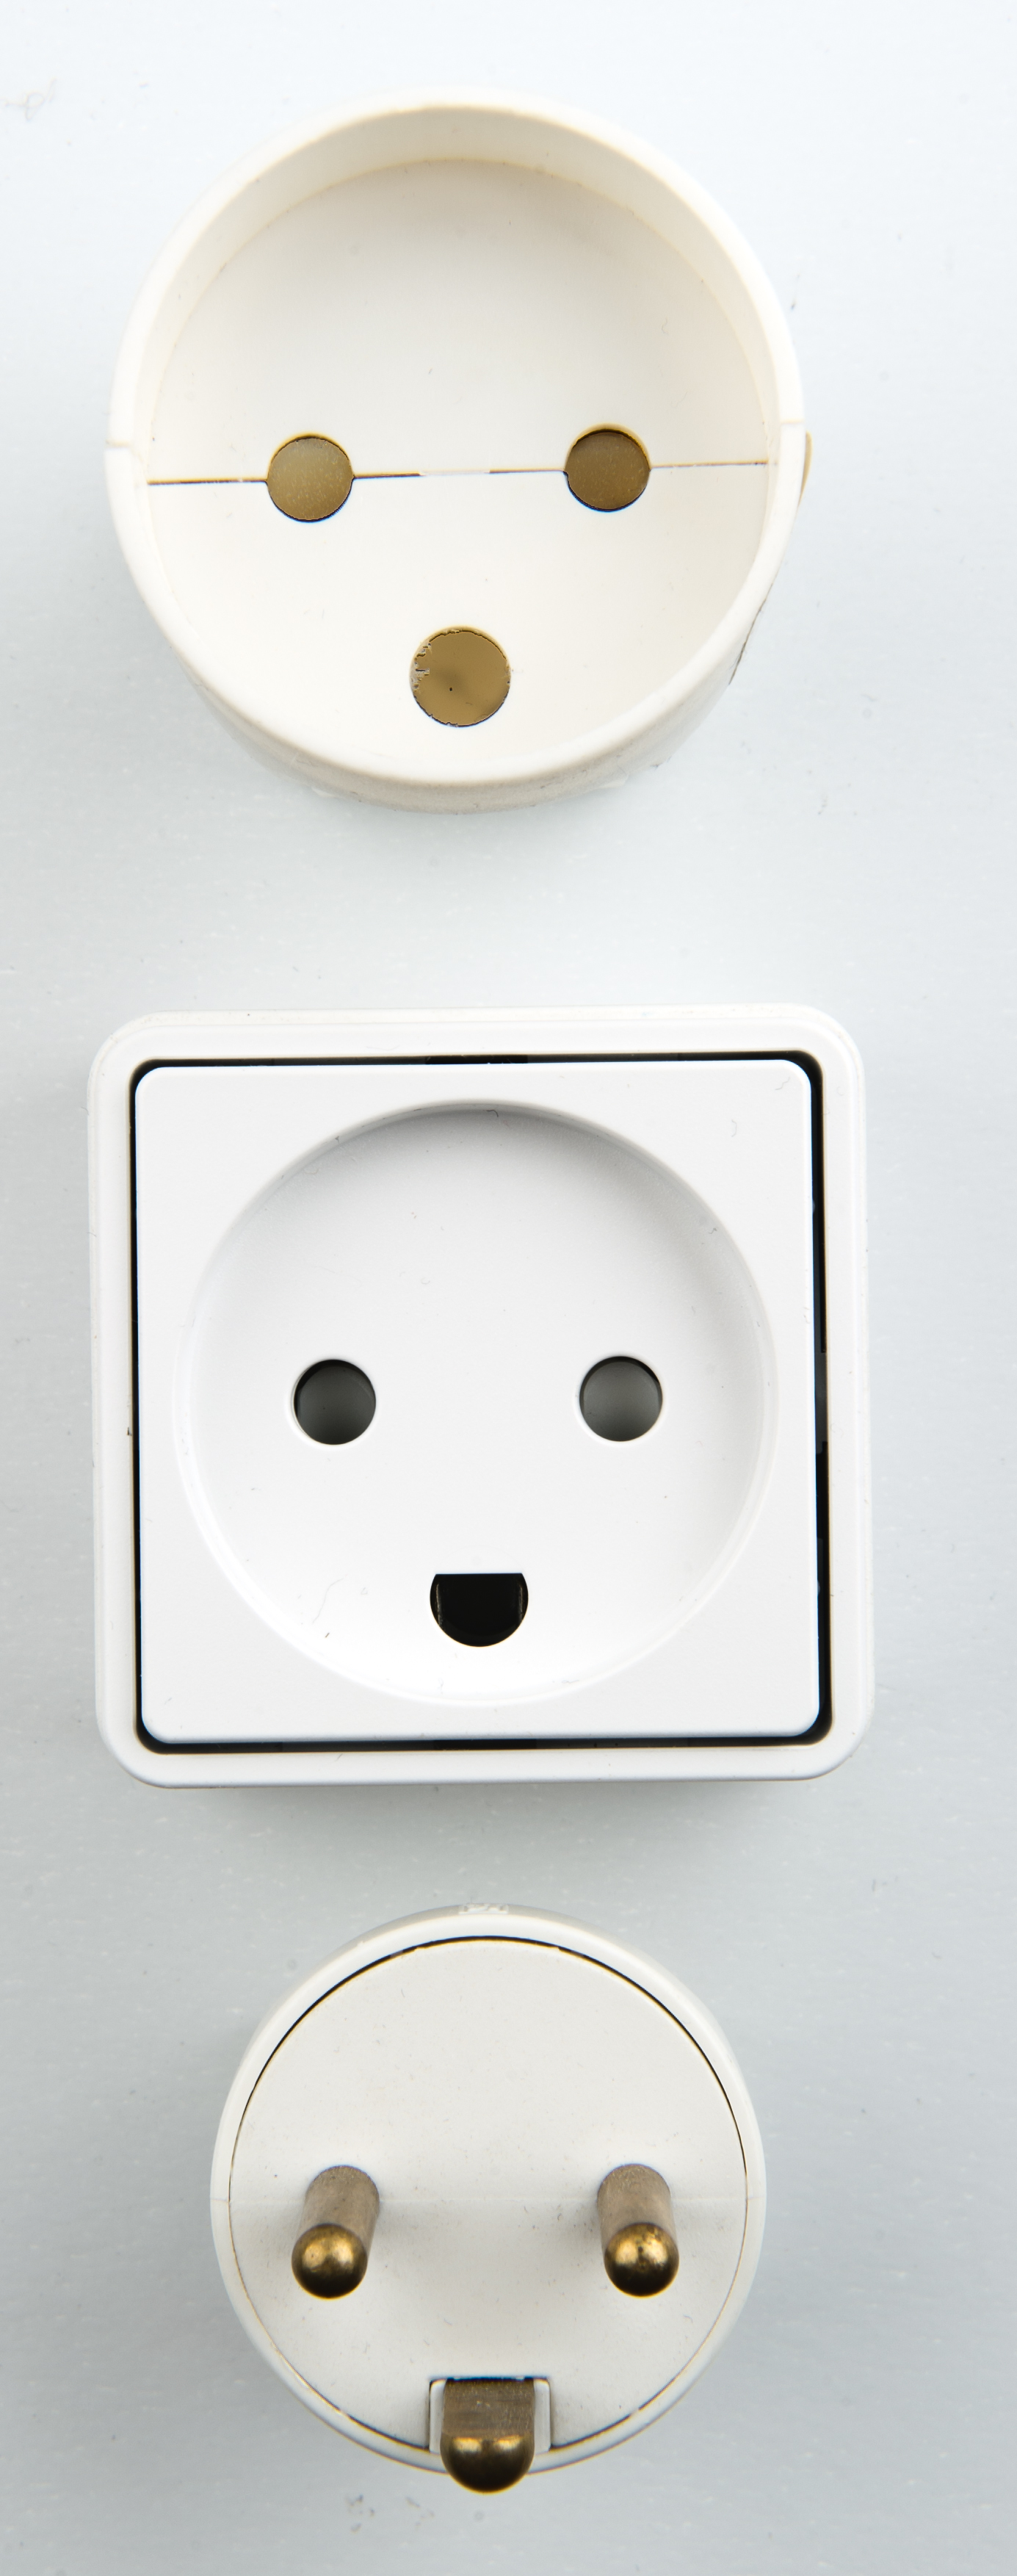 Danish electrical plugs.jpg